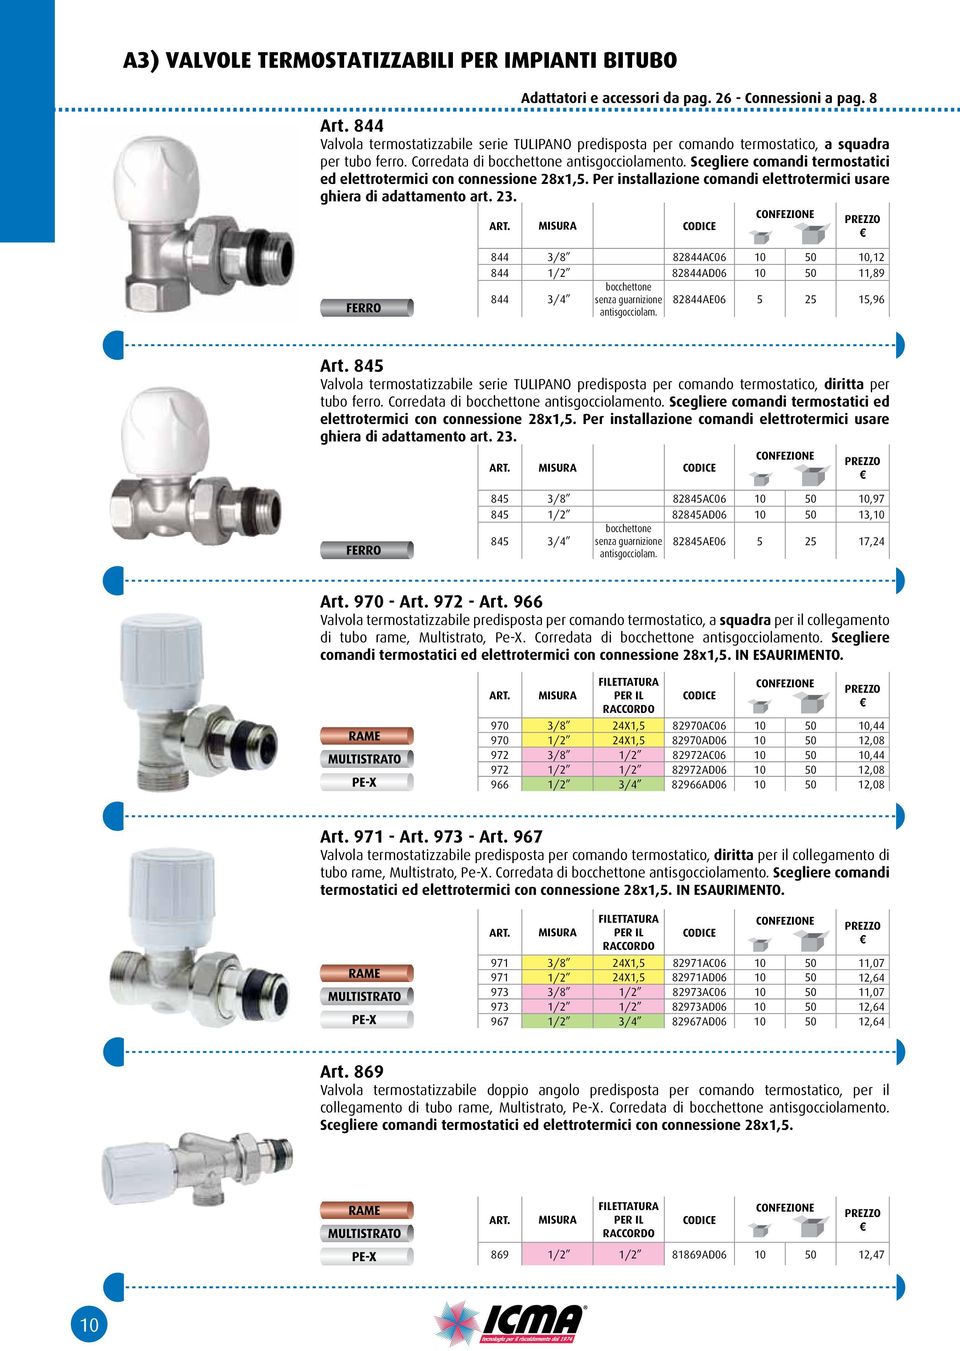 Scegliere comandi termostatici ed elettrotermici con connessione 28x1,5. Per installazione comandi elettrotermici usare ghiera di adattamento art. 23.